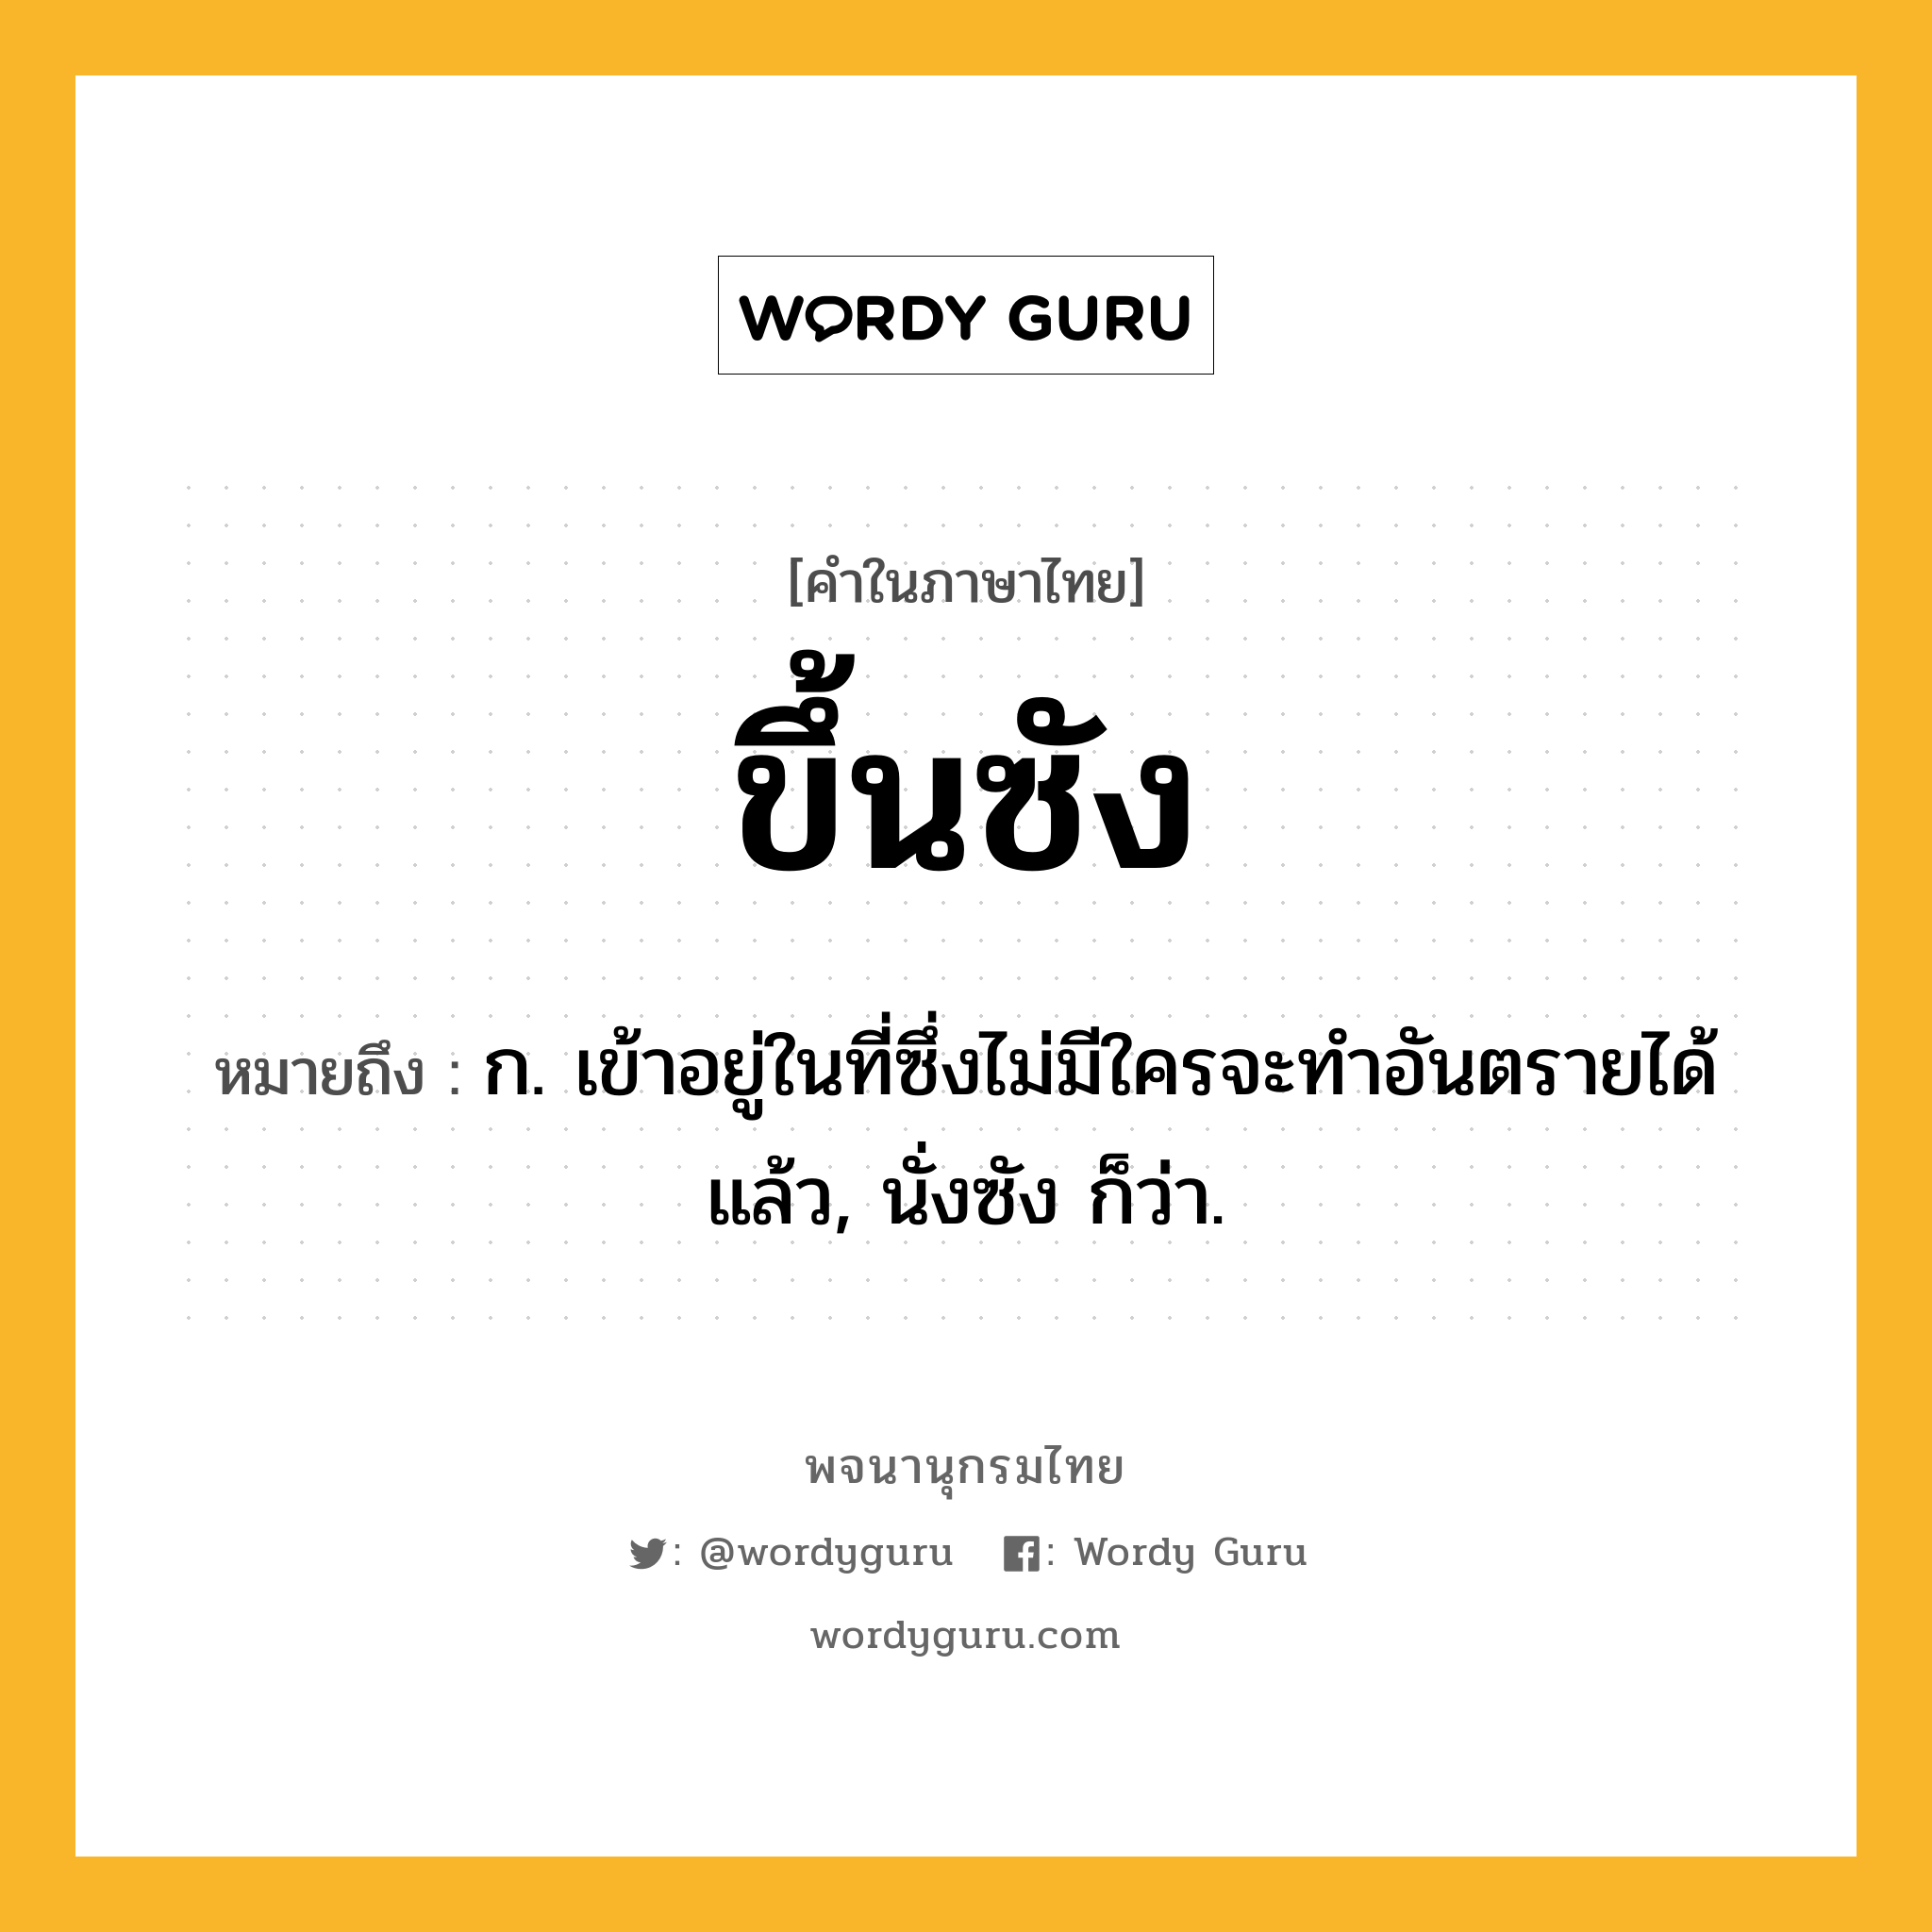 ขึ้นซัง ความหมาย หมายถึงอะไร?, คำในภาษาไทย ขึ้นซัง หมายถึง ก. เข้าอยู่ในที่ซึ่งไม่มีใครจะทําอันตรายได้แล้ว, นั่งซัง ก็ว่า.